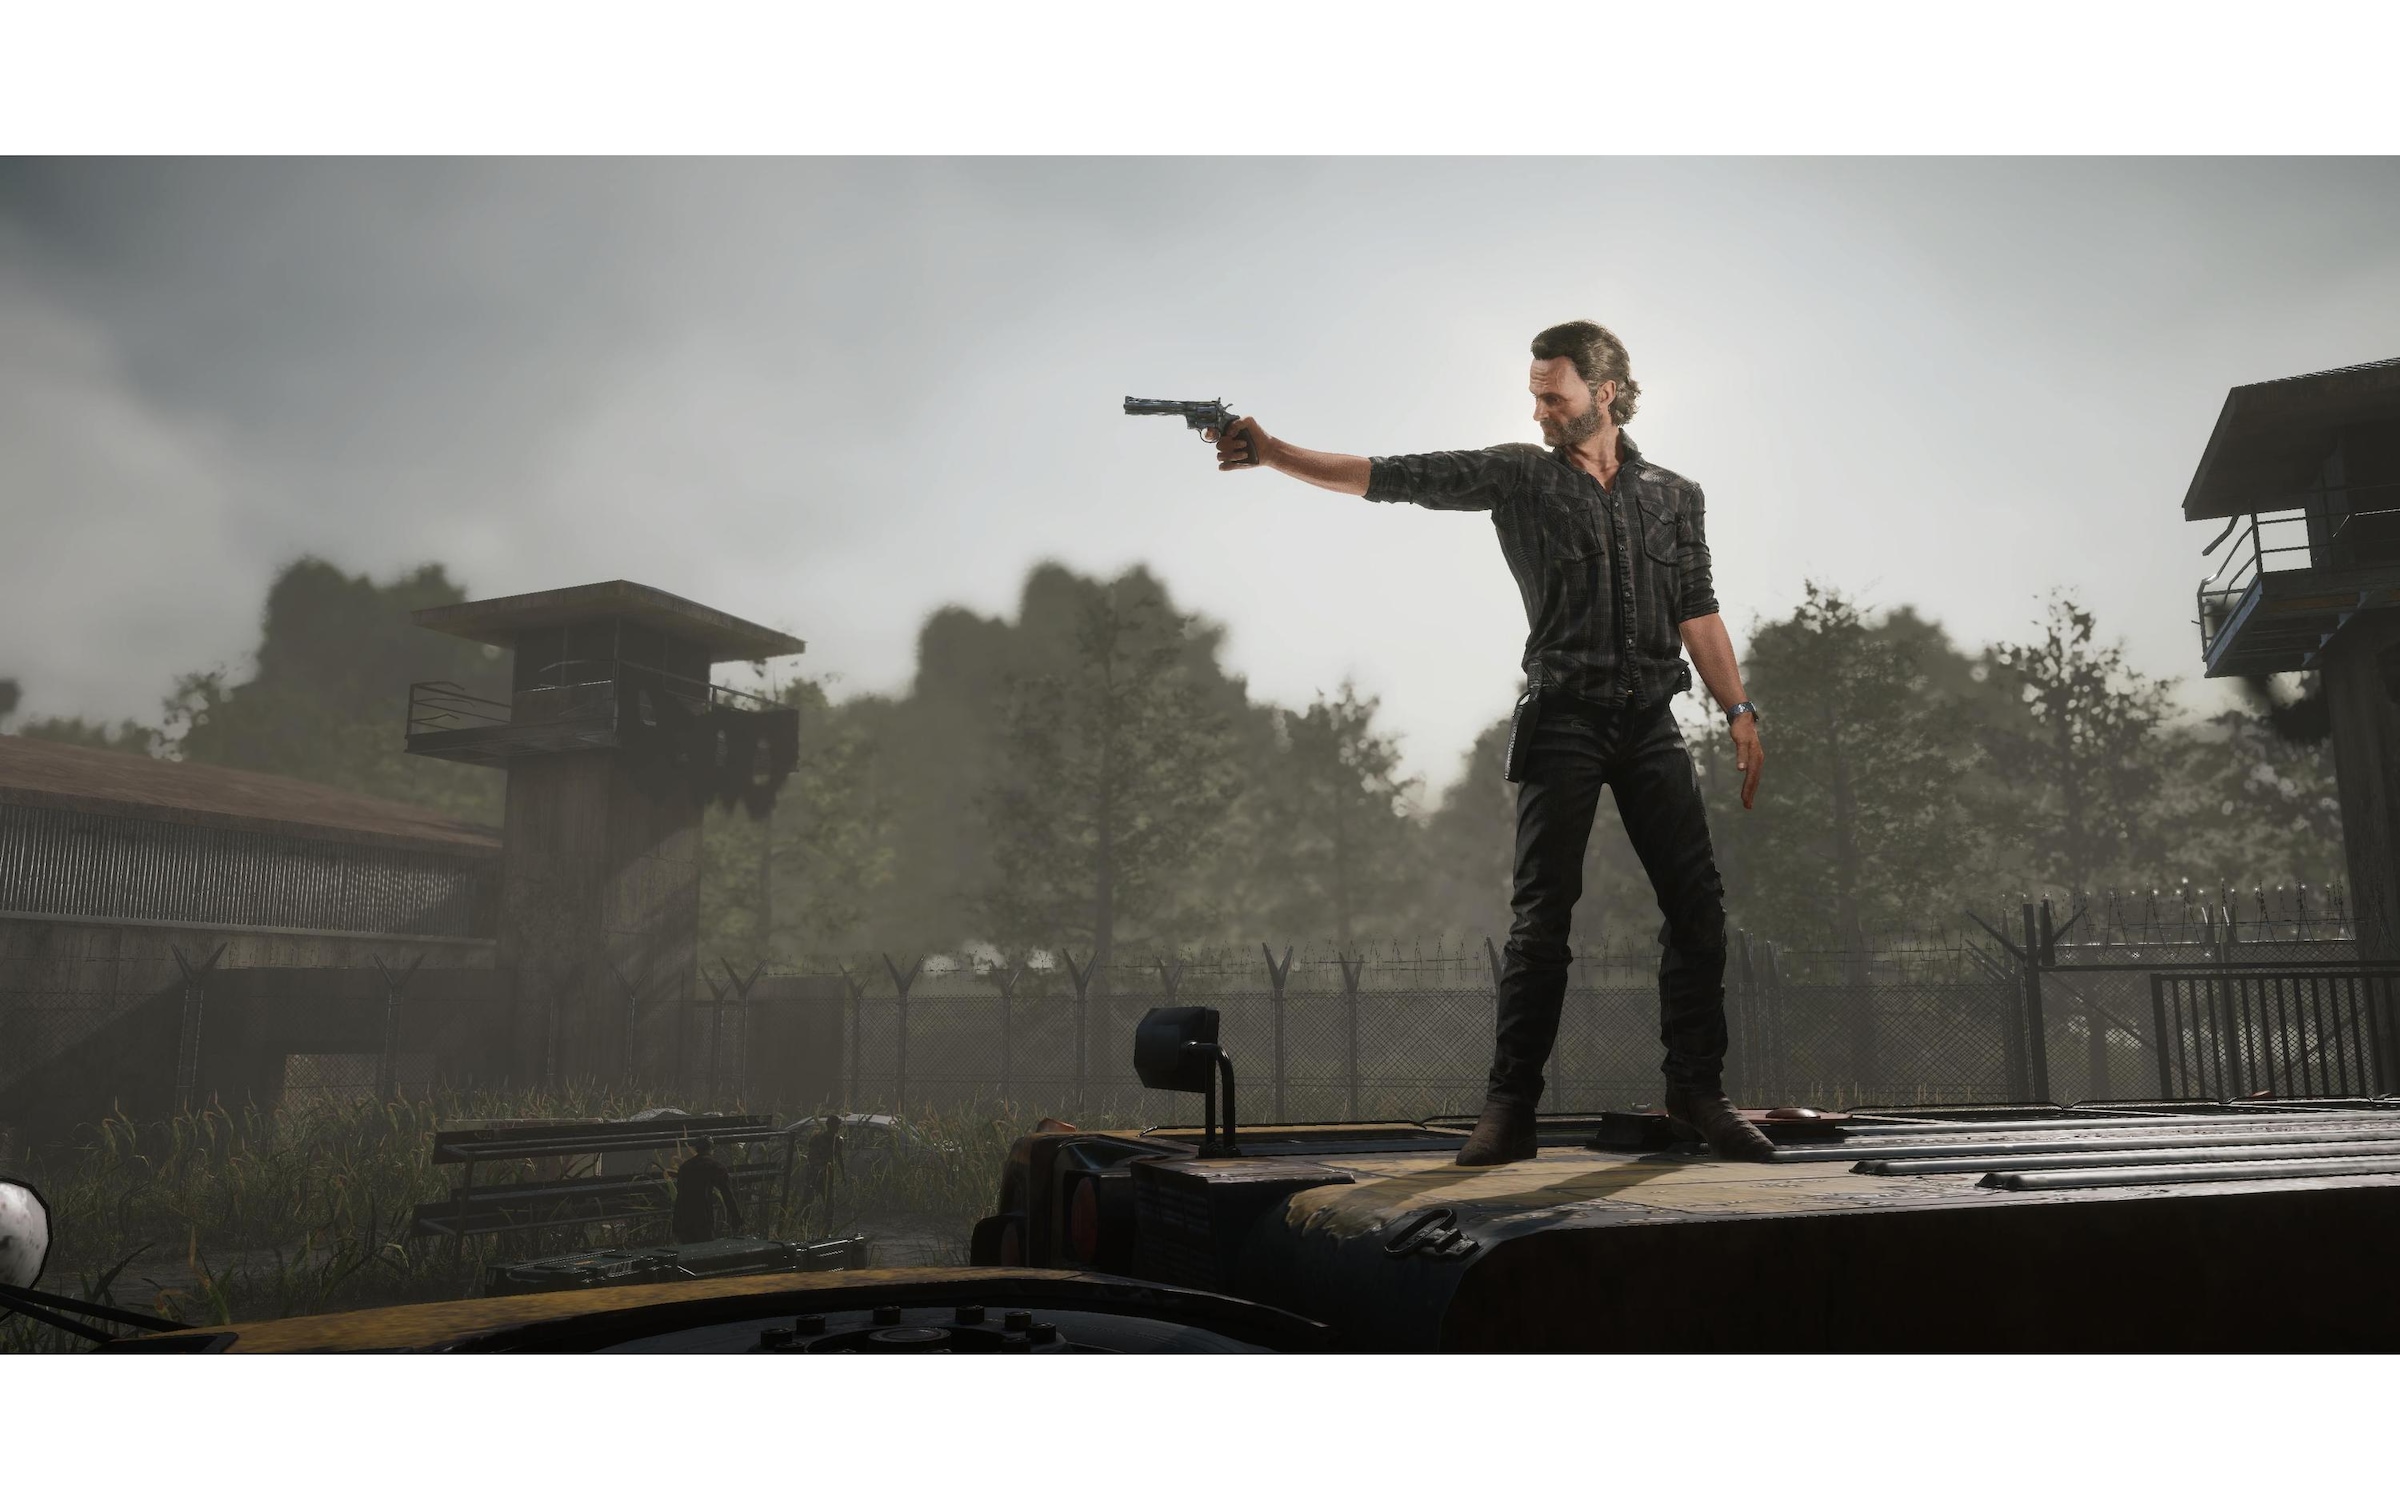 Spielesoftware »The Walking Dead: Destinies«, Nintendo Switch